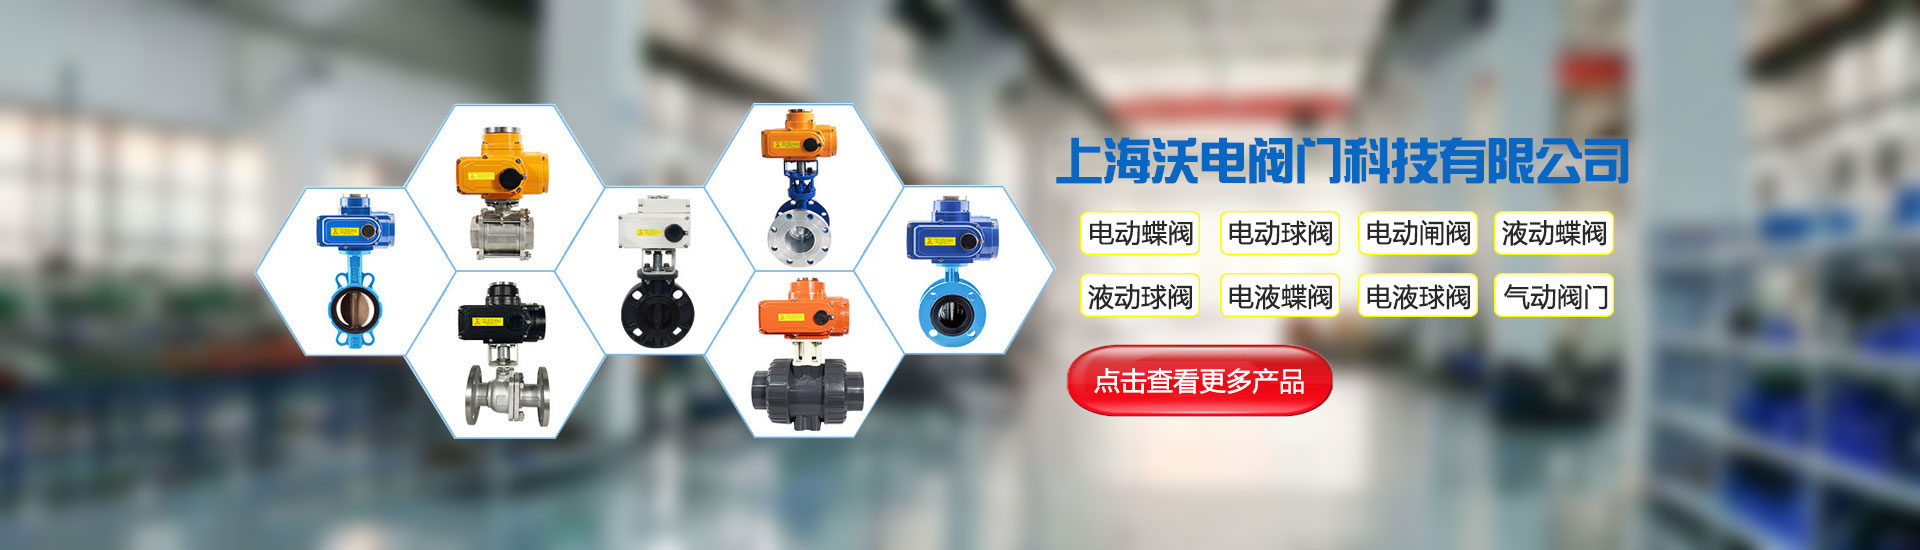 電液執行器廠家-上海沃電自動化儀表有限公